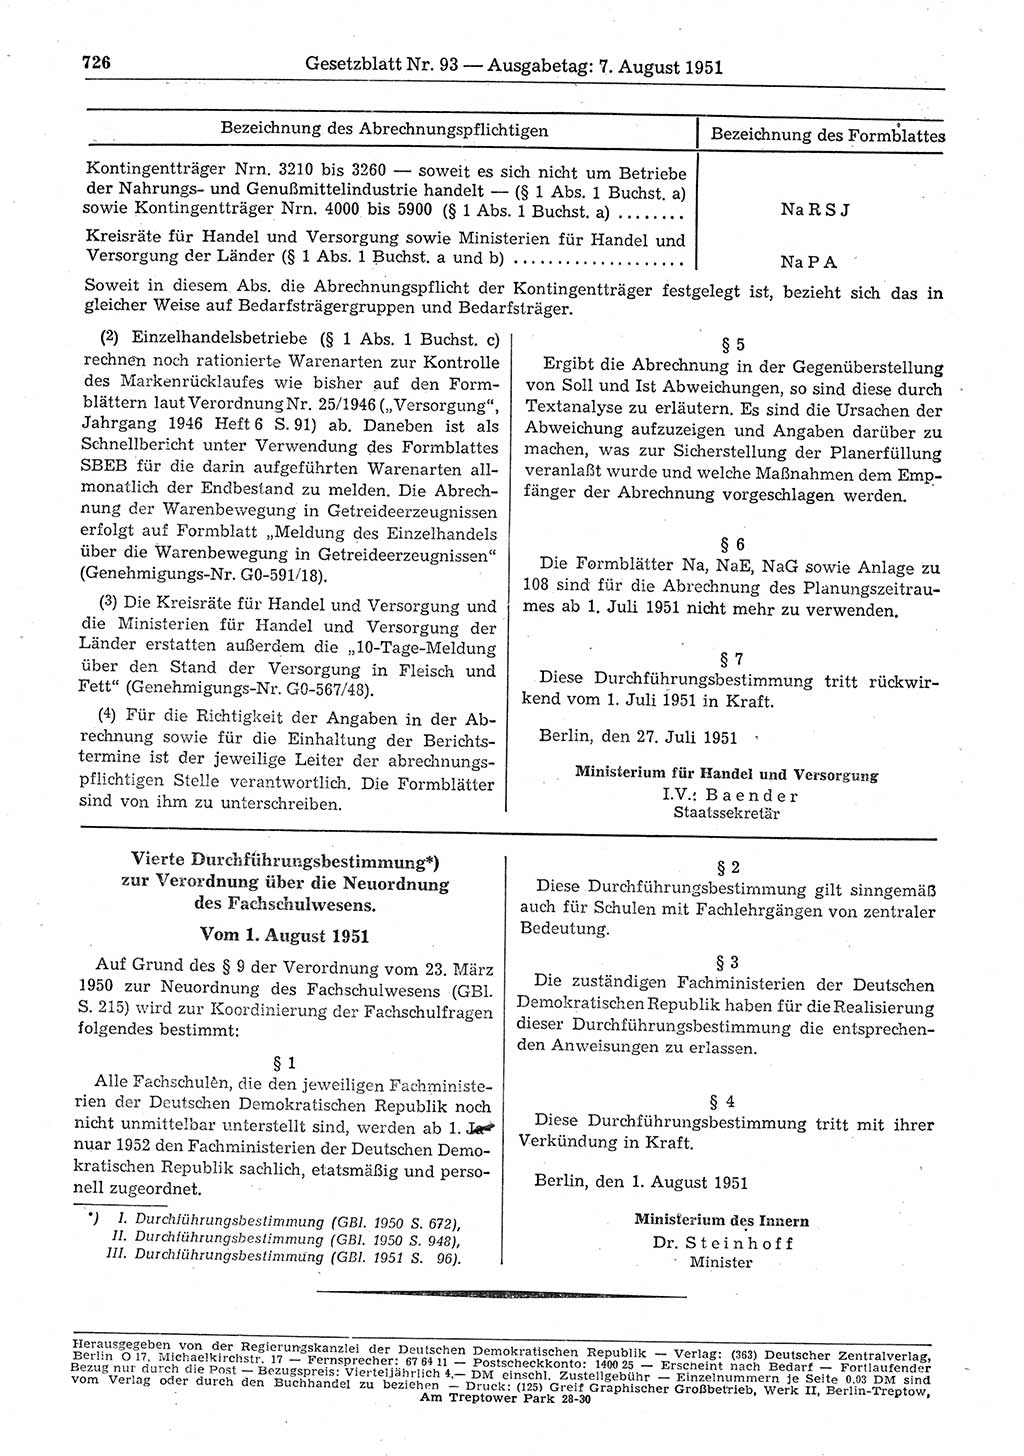 Gesetzblatt (GBl.) der Deutschen Demokratischen Republik (DDR) 1951, Seite 726 (GBl. DDR 1951, S. 726)